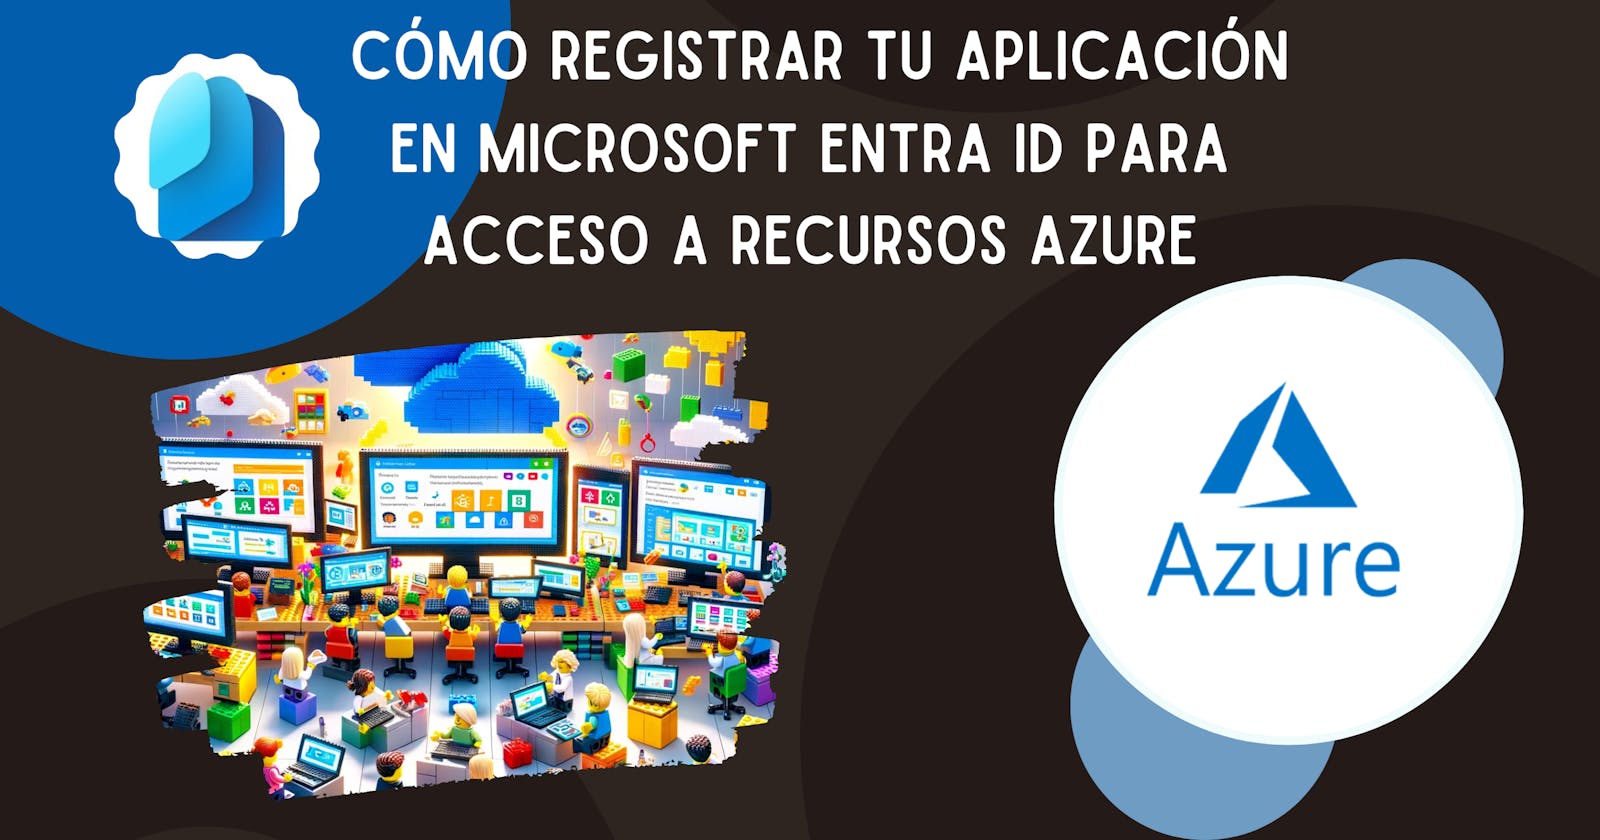 Cómo Registrar tu Aplicación en Microsoft Entra ID para Acceso a Recursos Azure